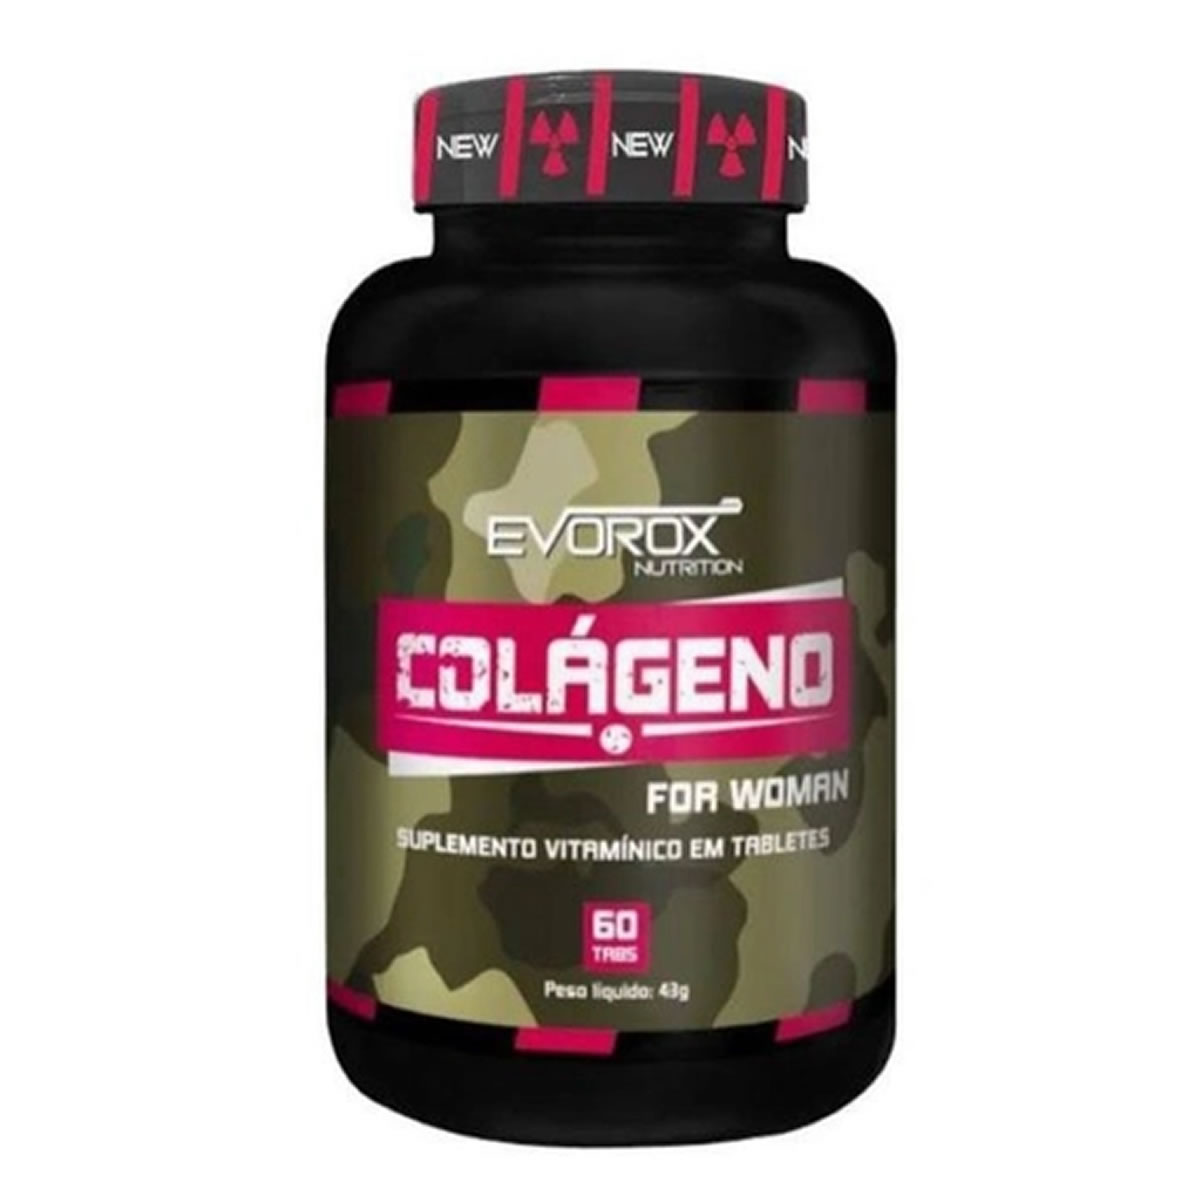 Colágeno Woman 60 Tabs - Evorox Nutrition